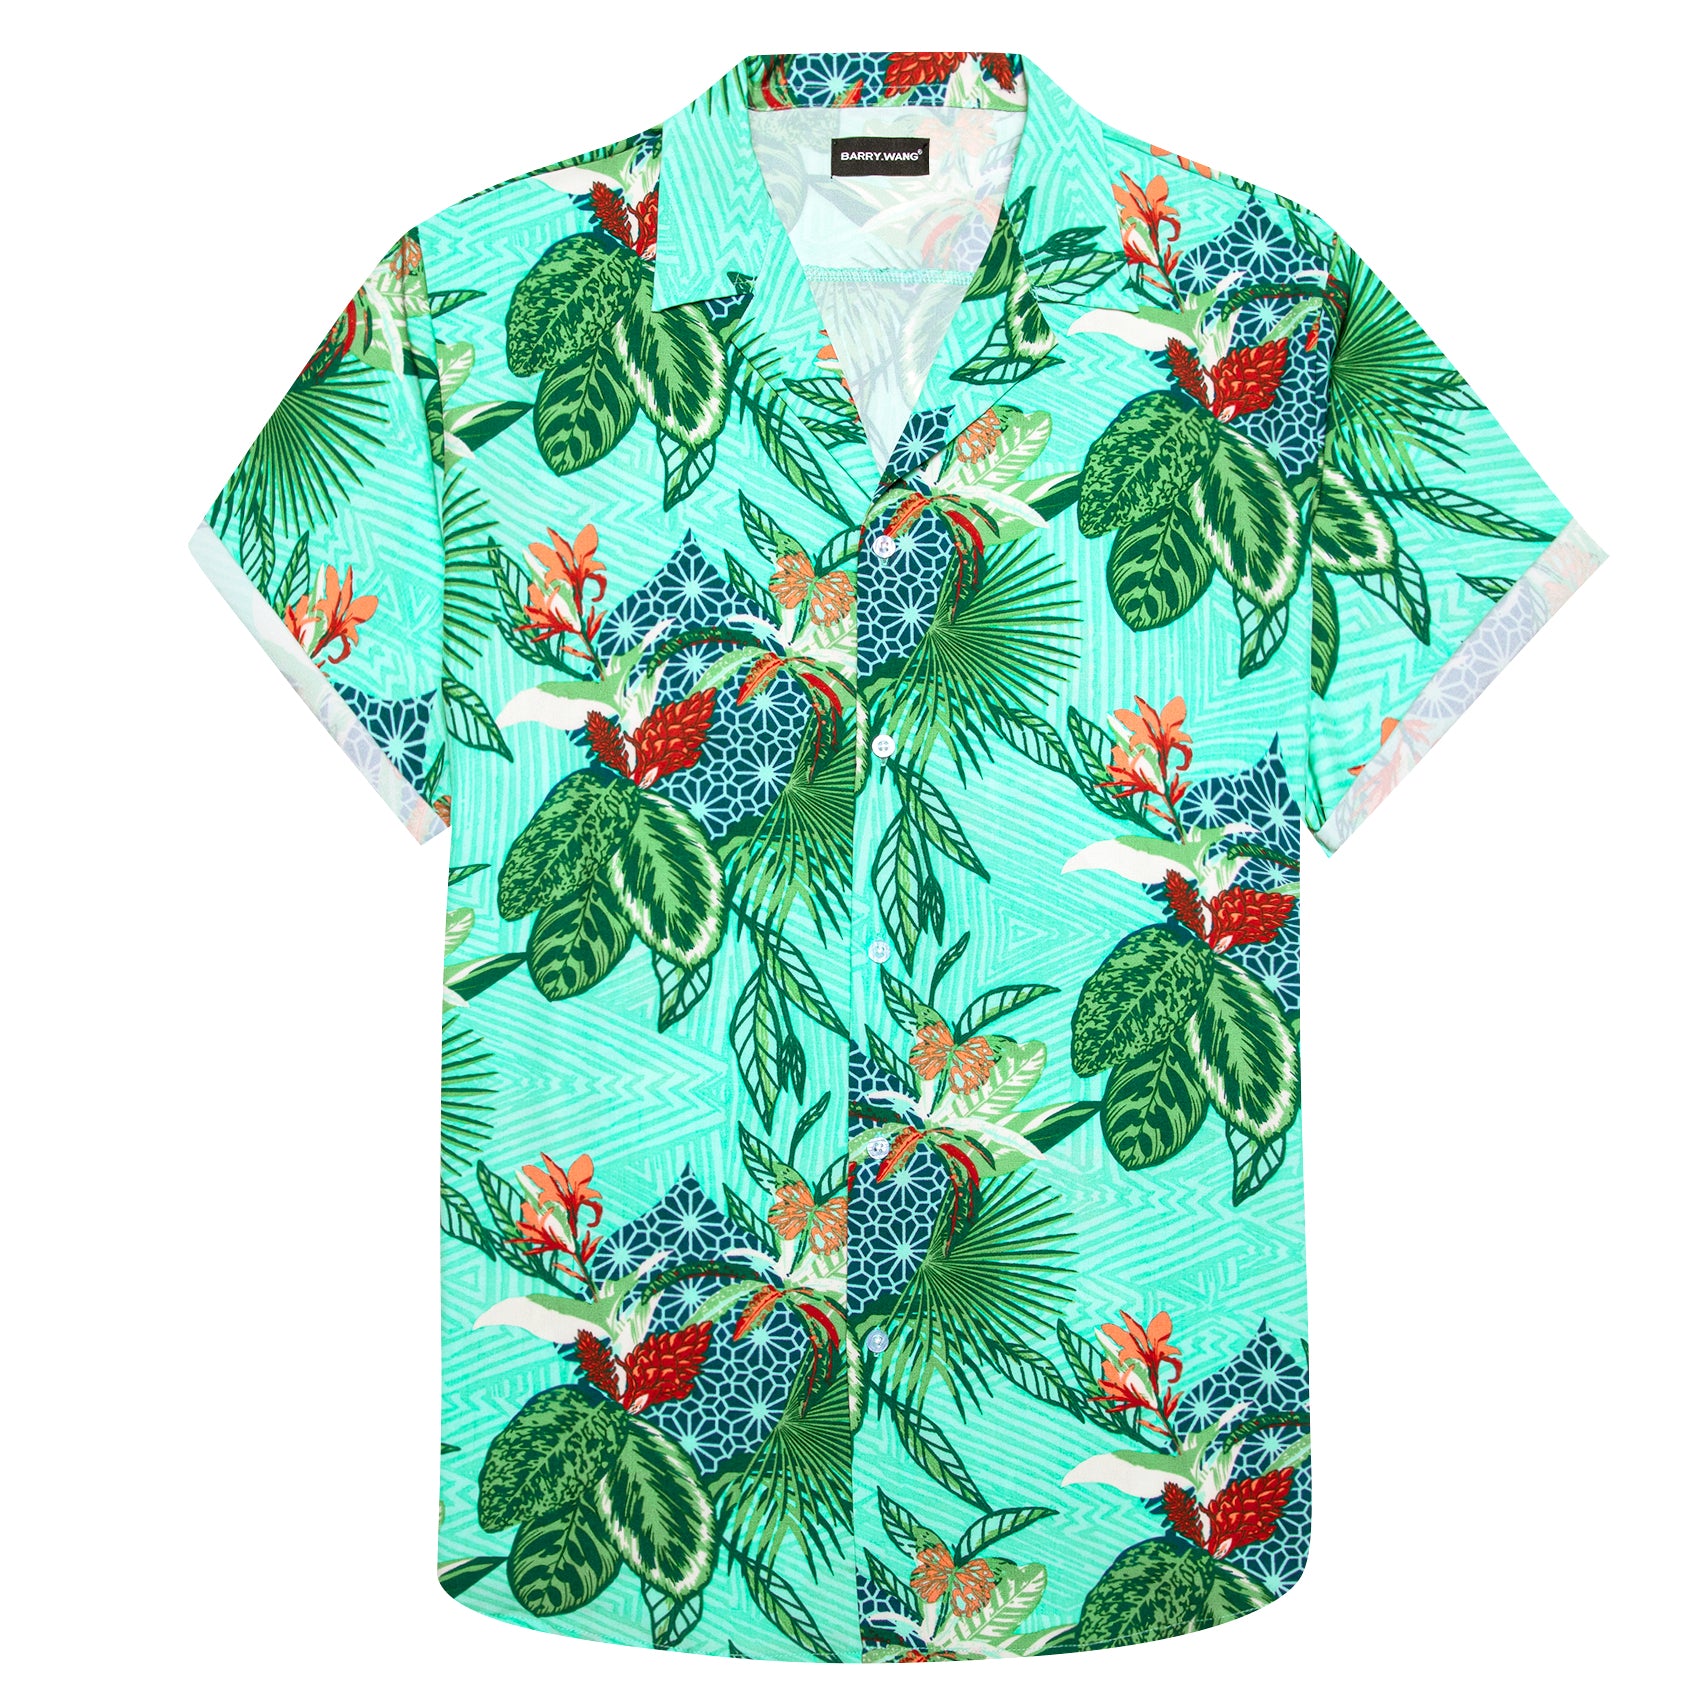 Barry.wang Men's Shirt Turquoise Floral Short Sleeves Silk Summer Hawaii Shirt